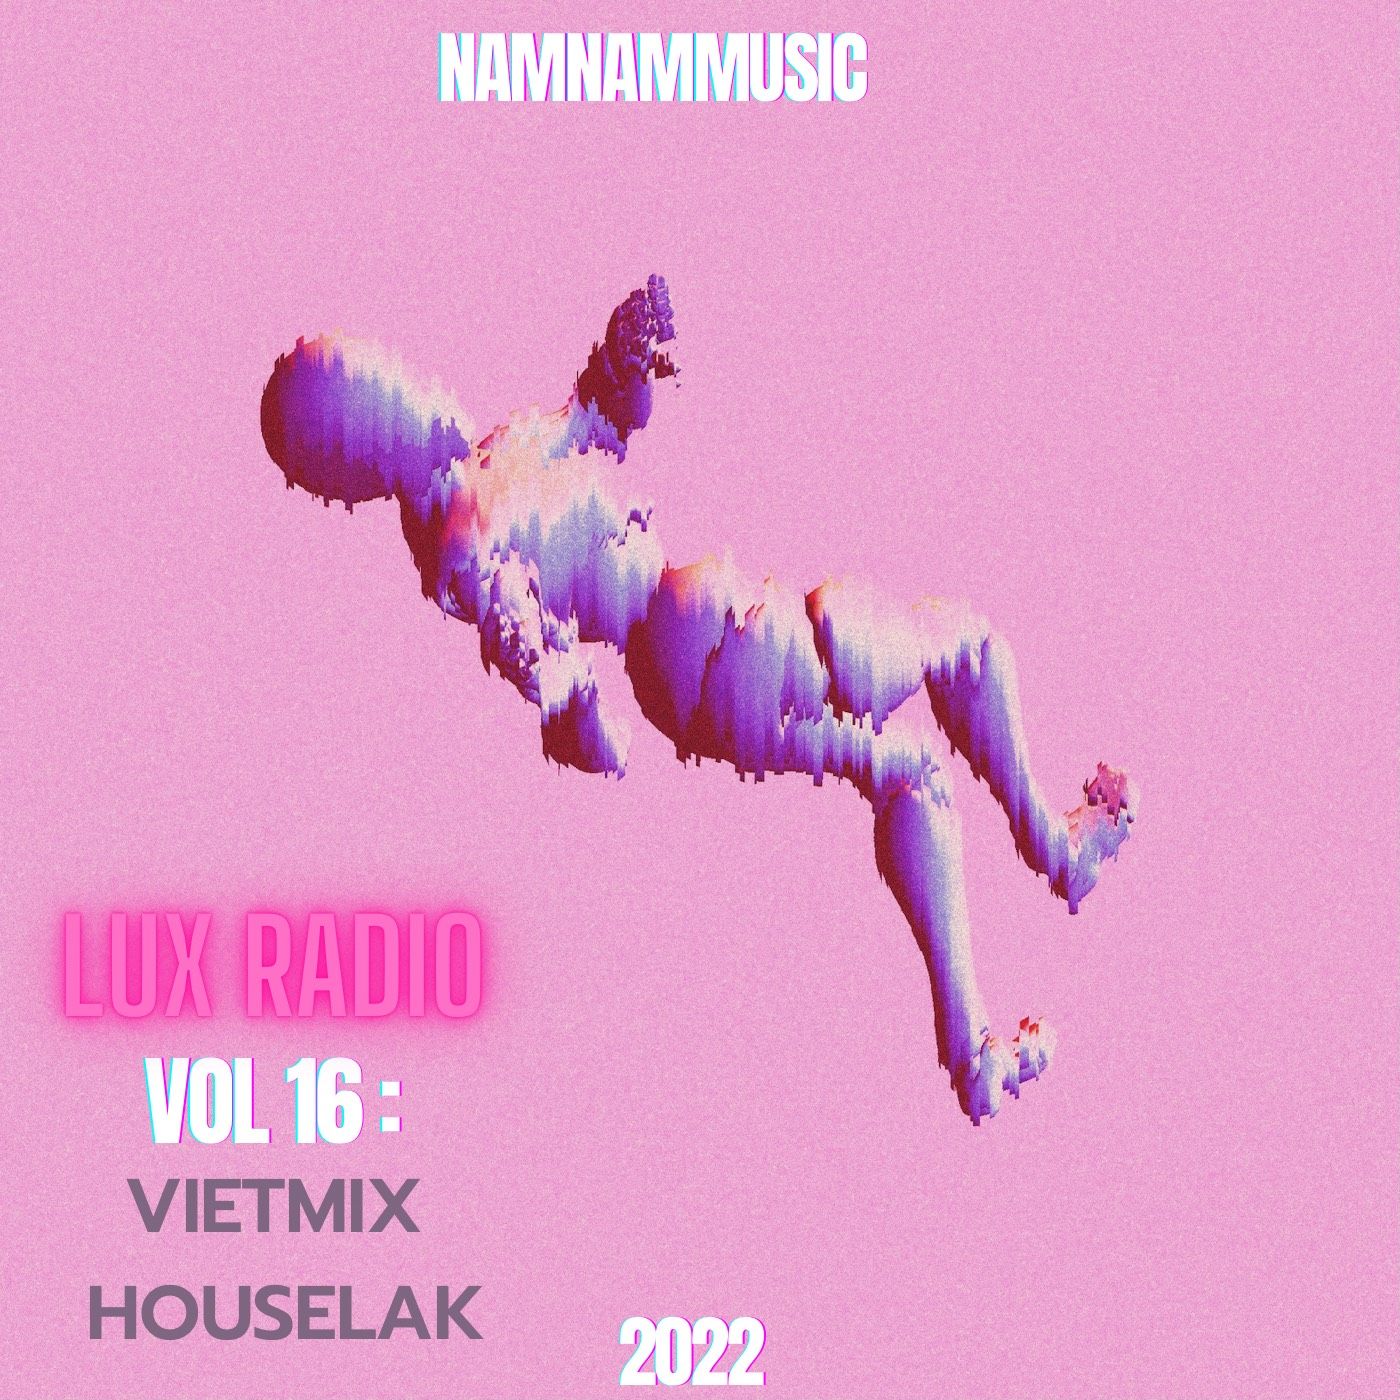 Khoasolla | NAMNAMMUSIC |  LUX RADIO #16 : VIETMIX HOUSELAK 2022 |